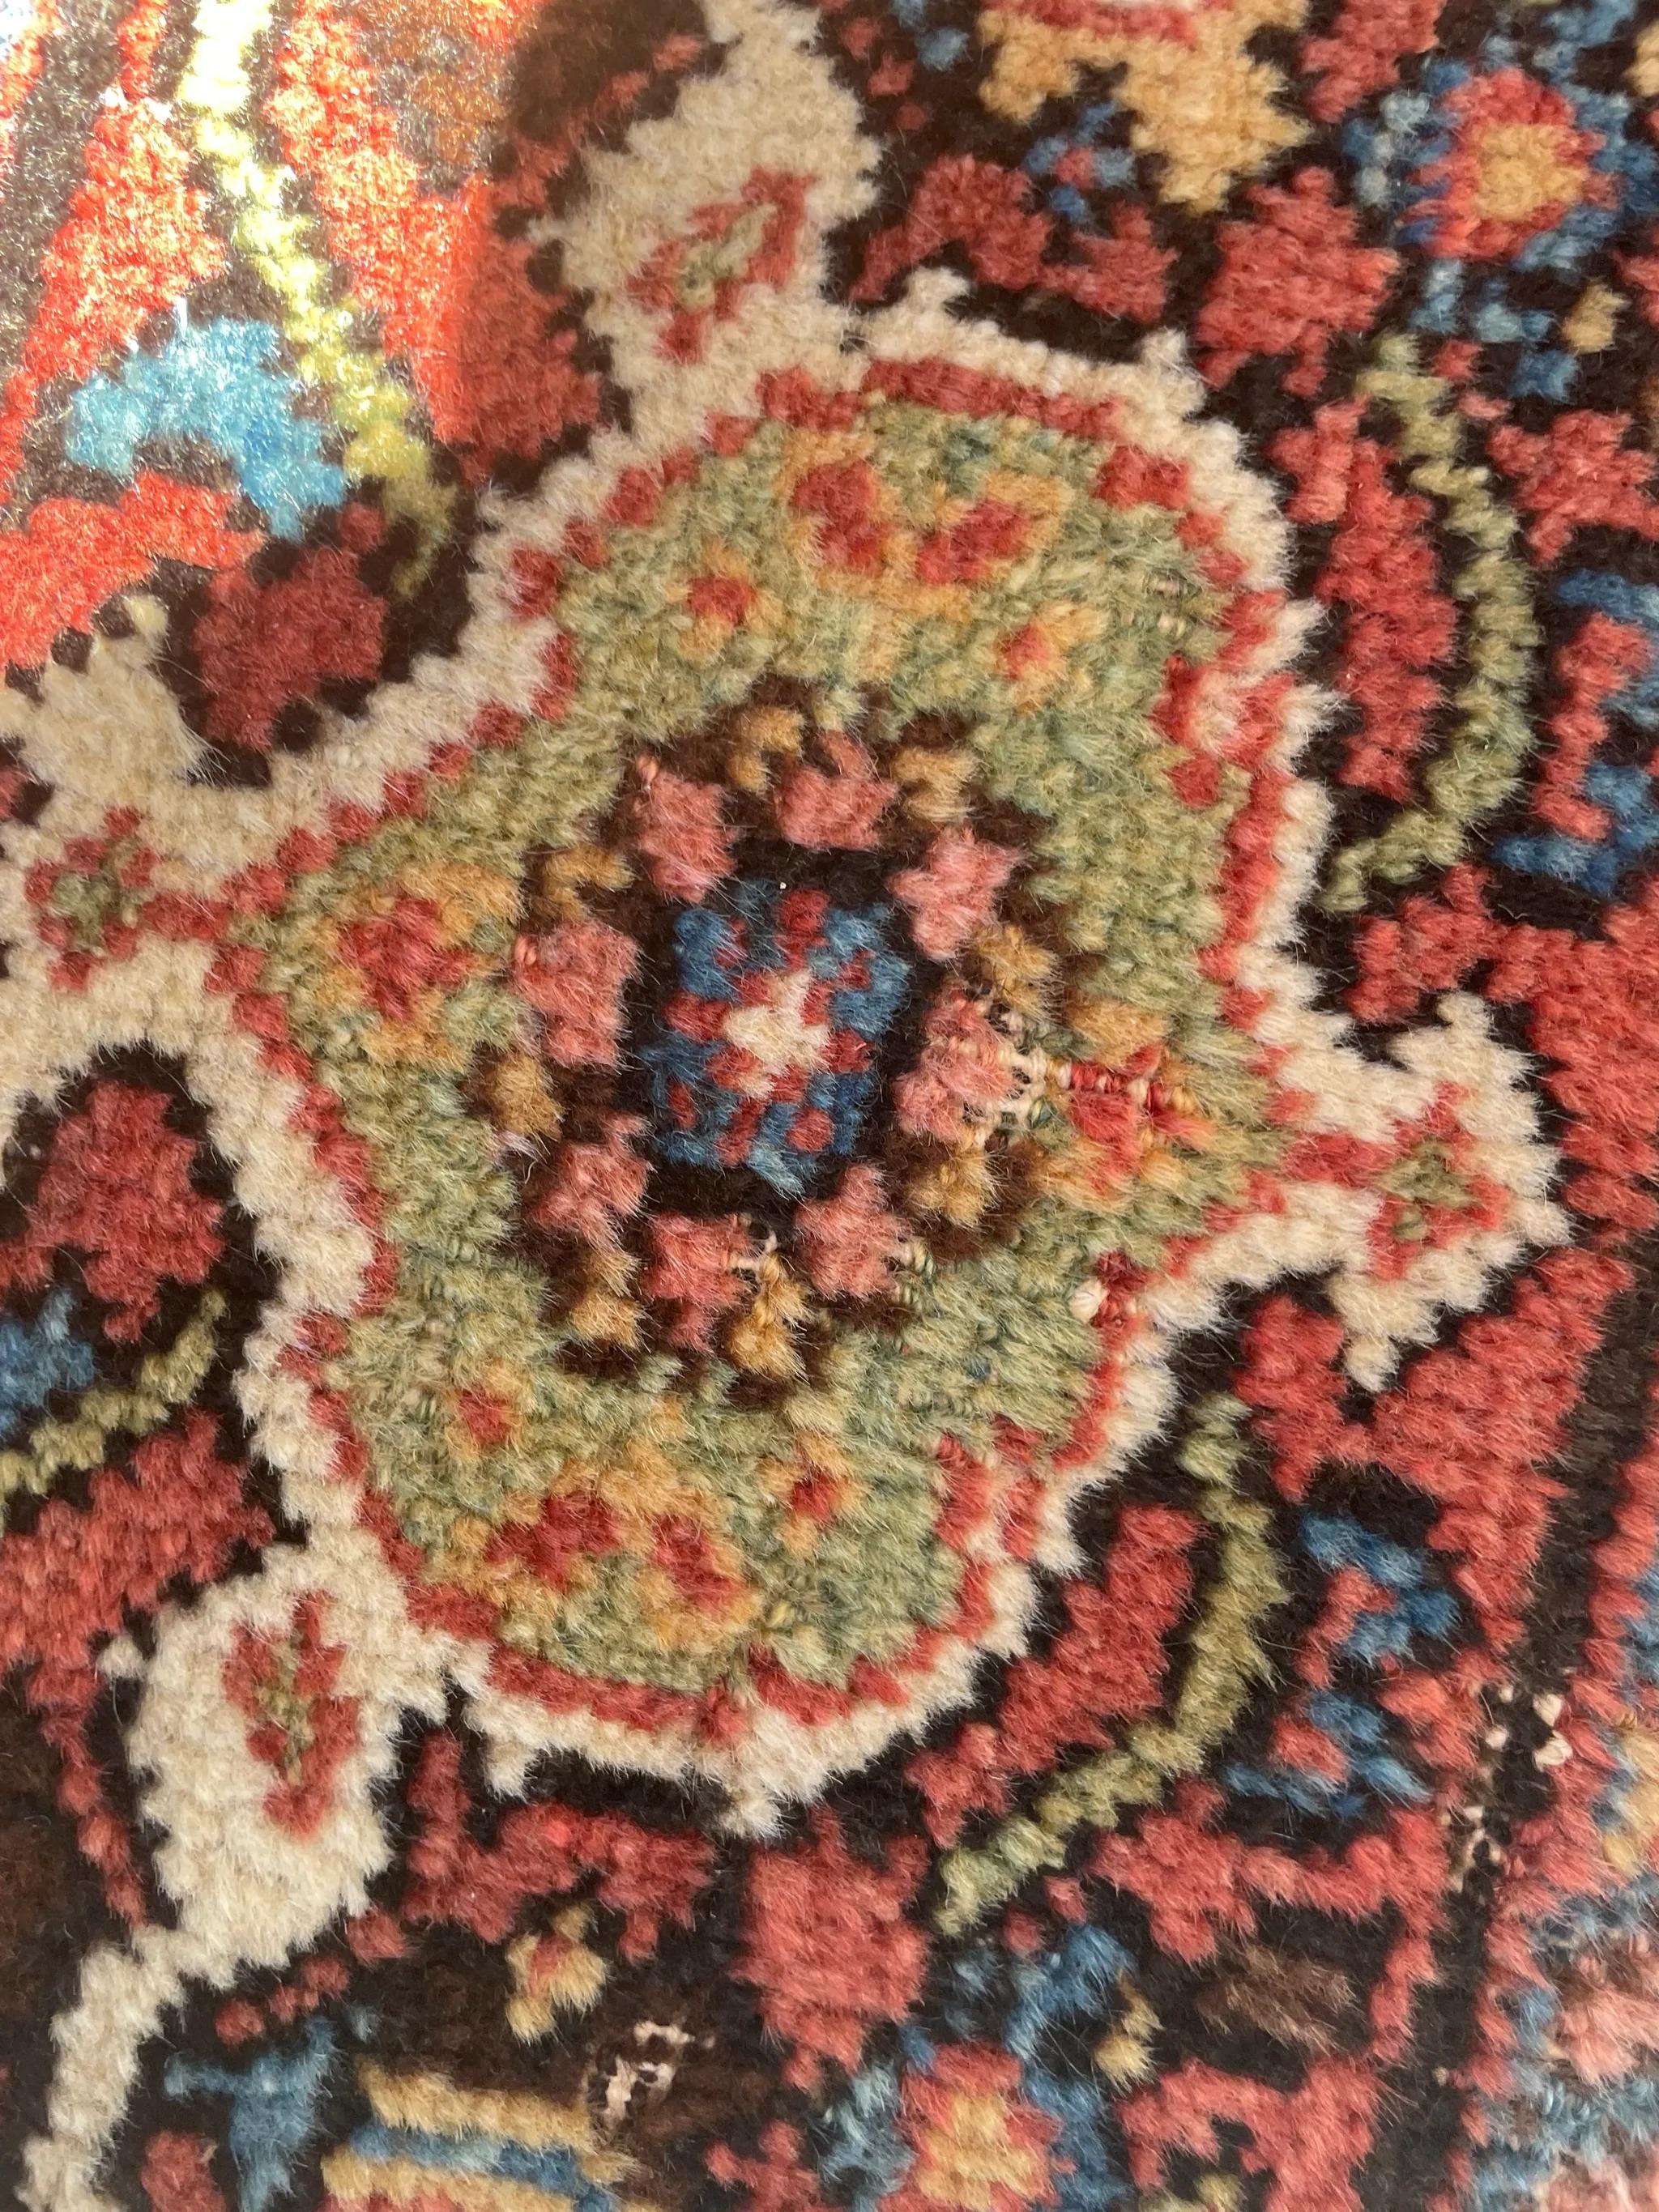 Antique Persian Carpet Rug in Deep Old-World Indigo, circa 1900-1915's For Sale 13